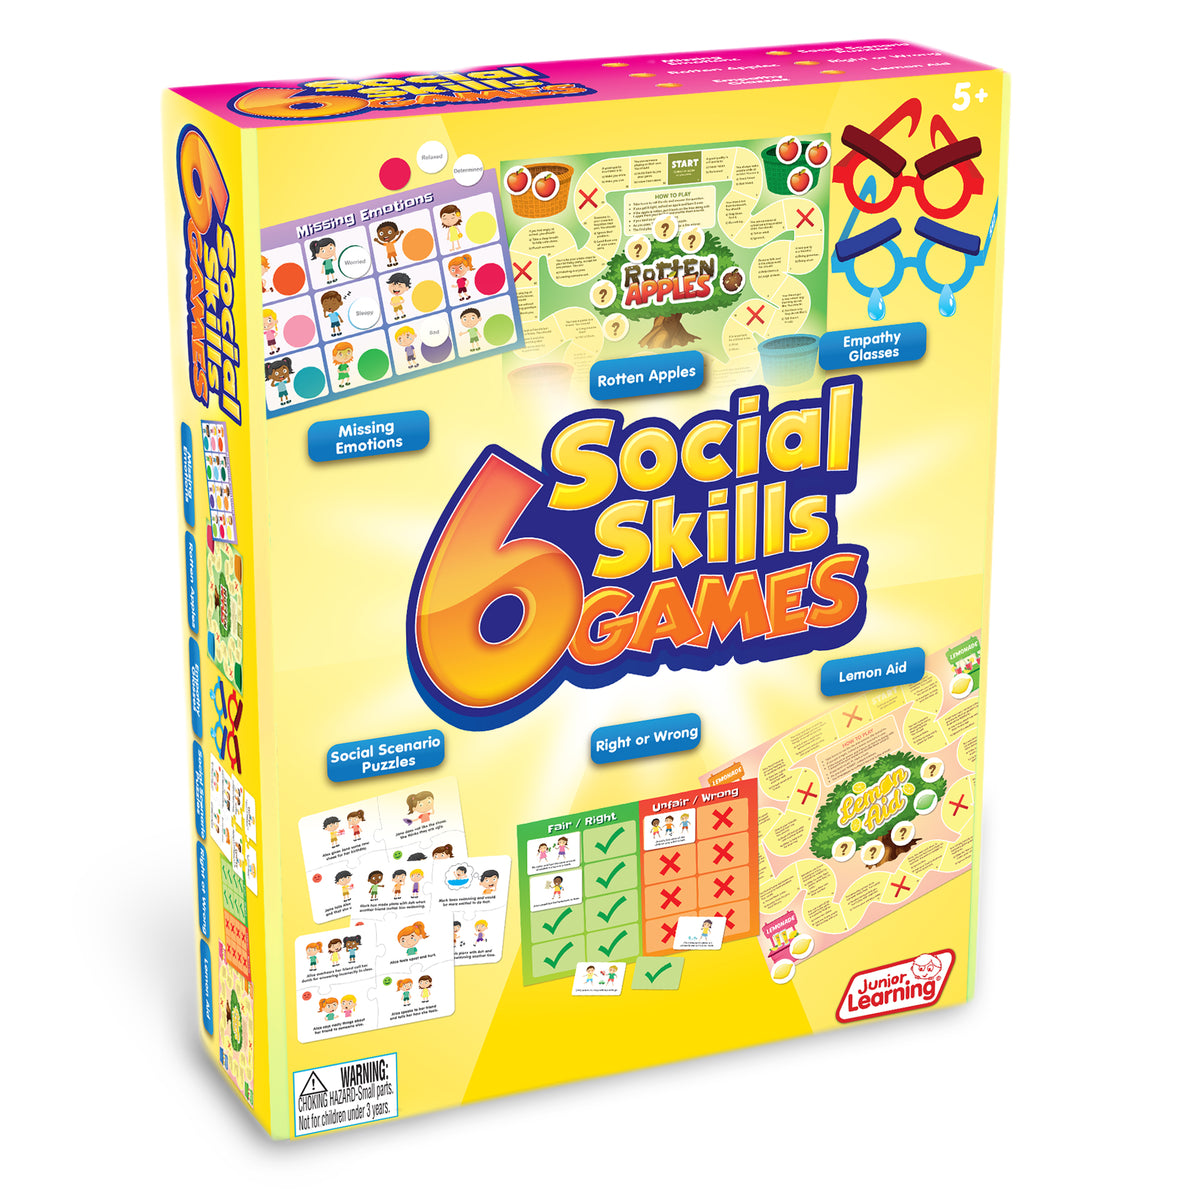 Junior Learning JL413 6 Social Skills Games front box faced right